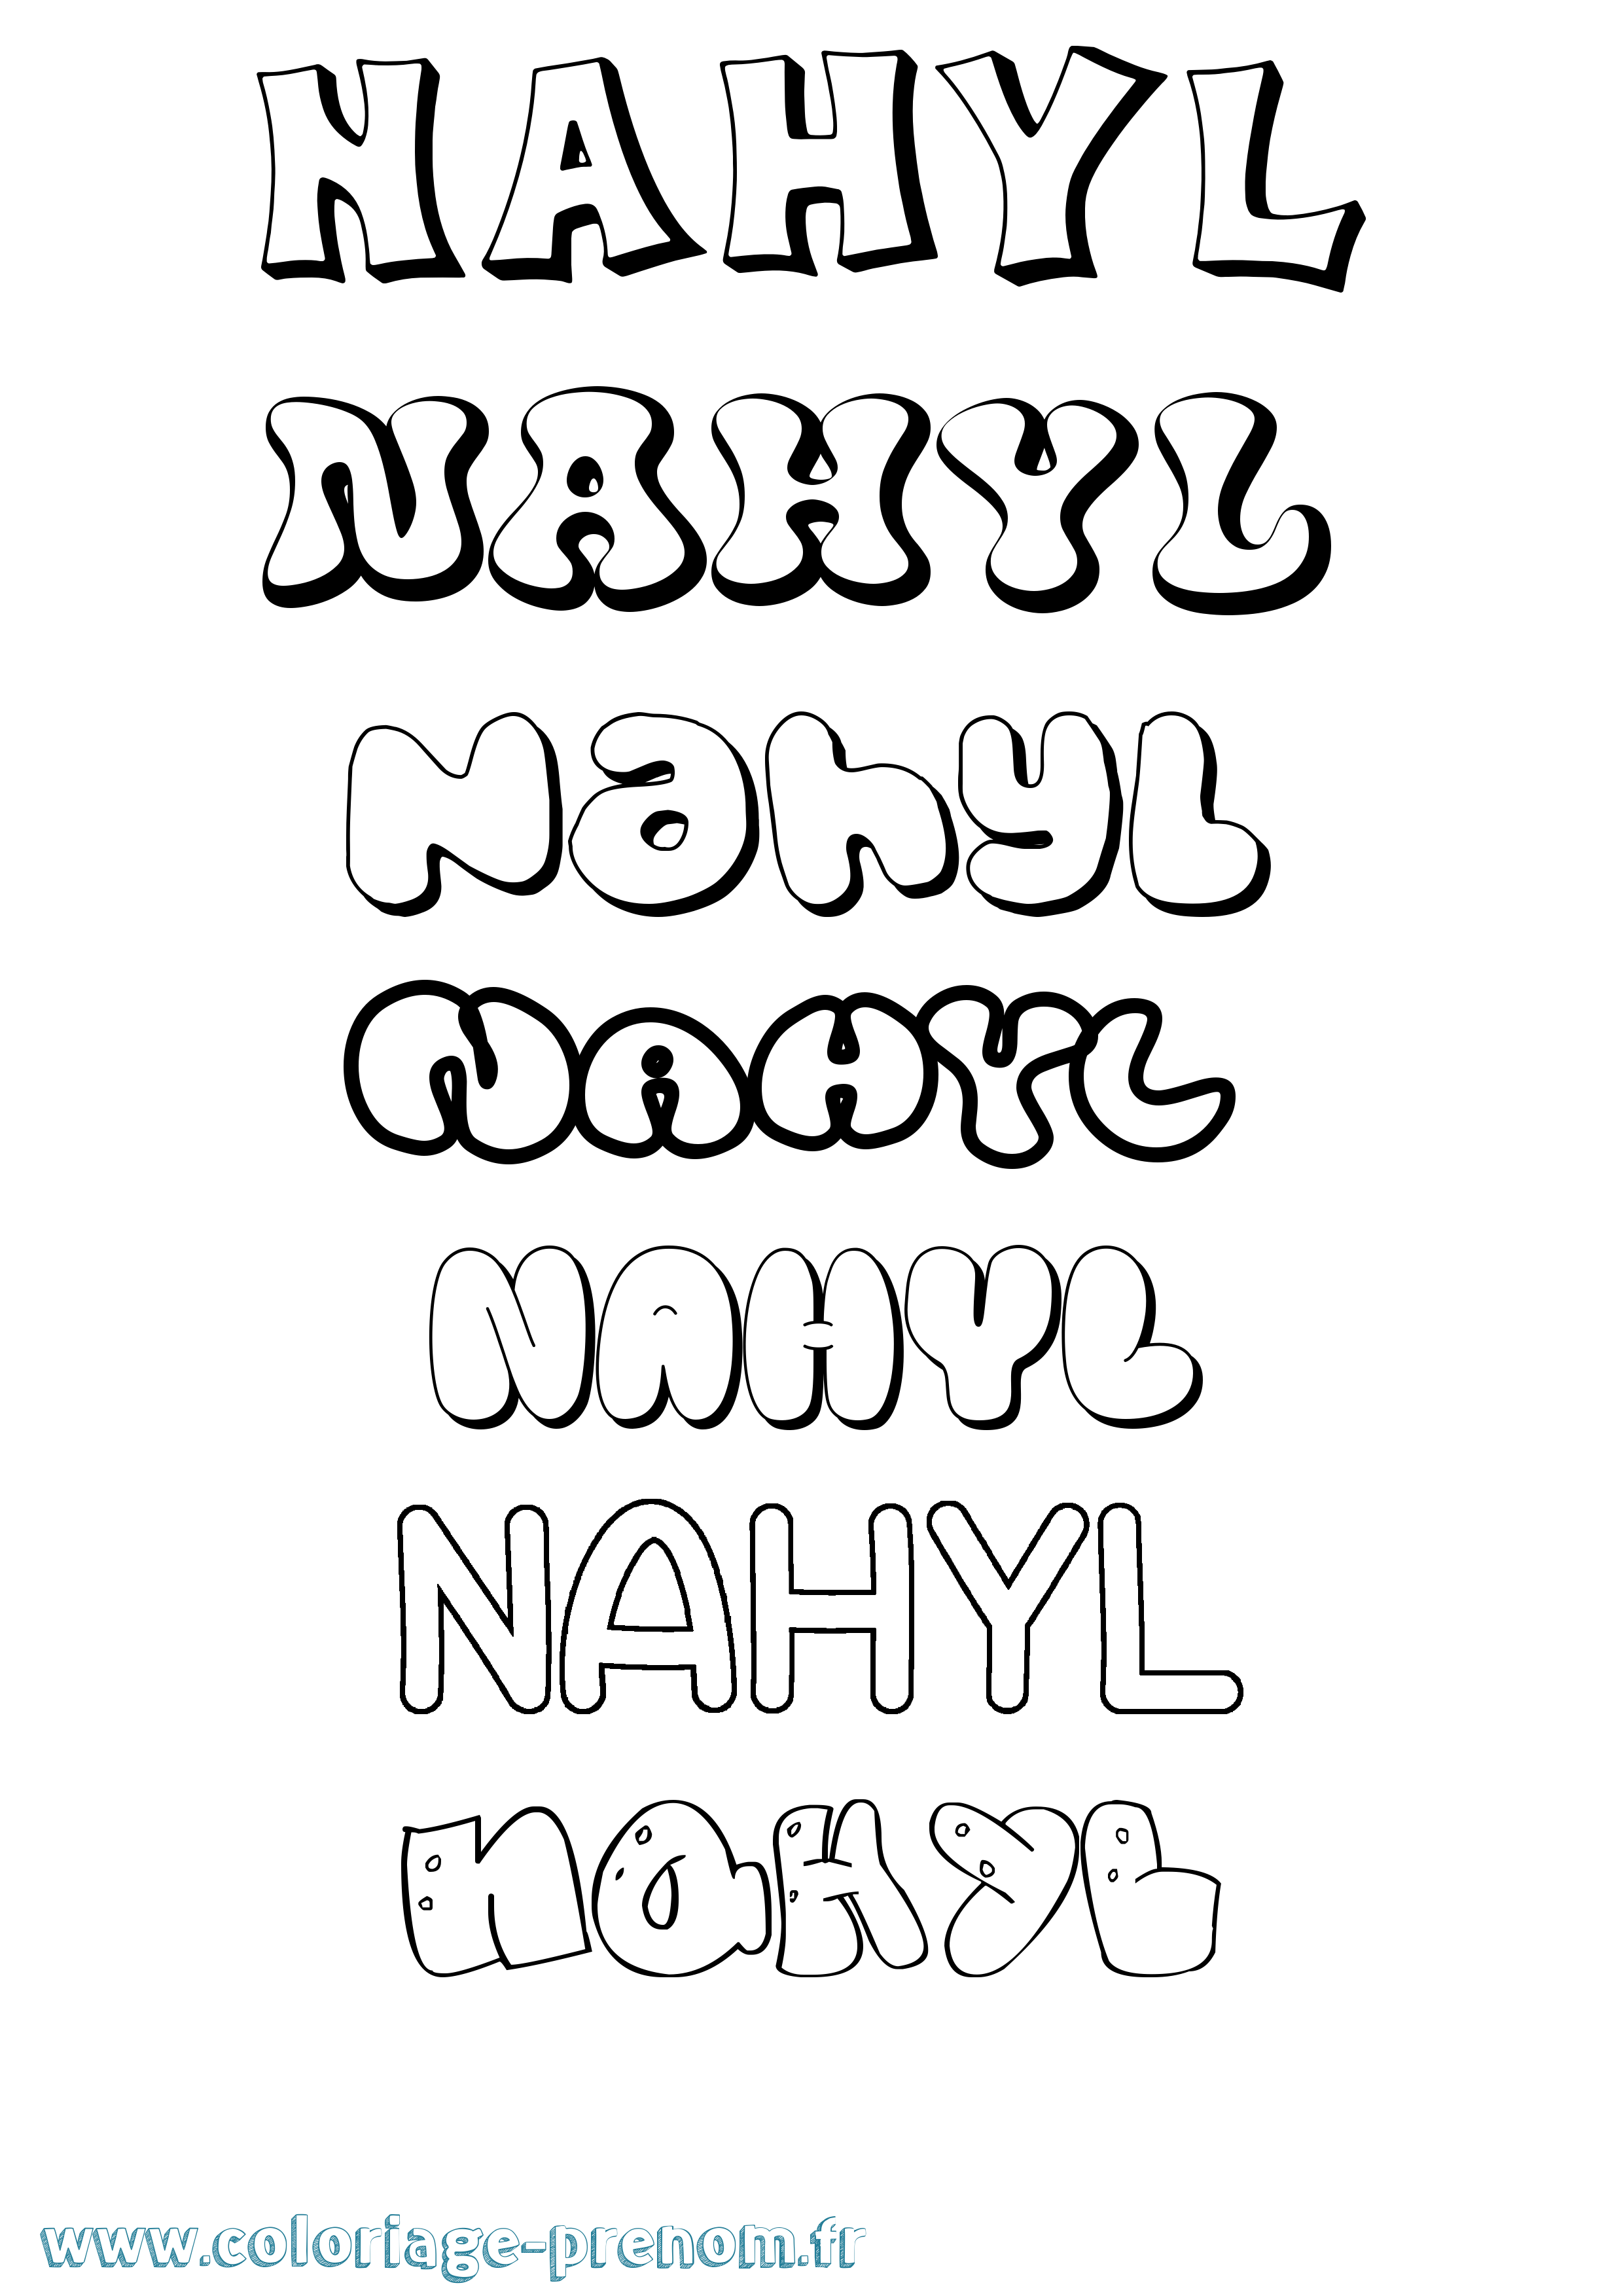 Coloriage prénom Nahyl Bubble